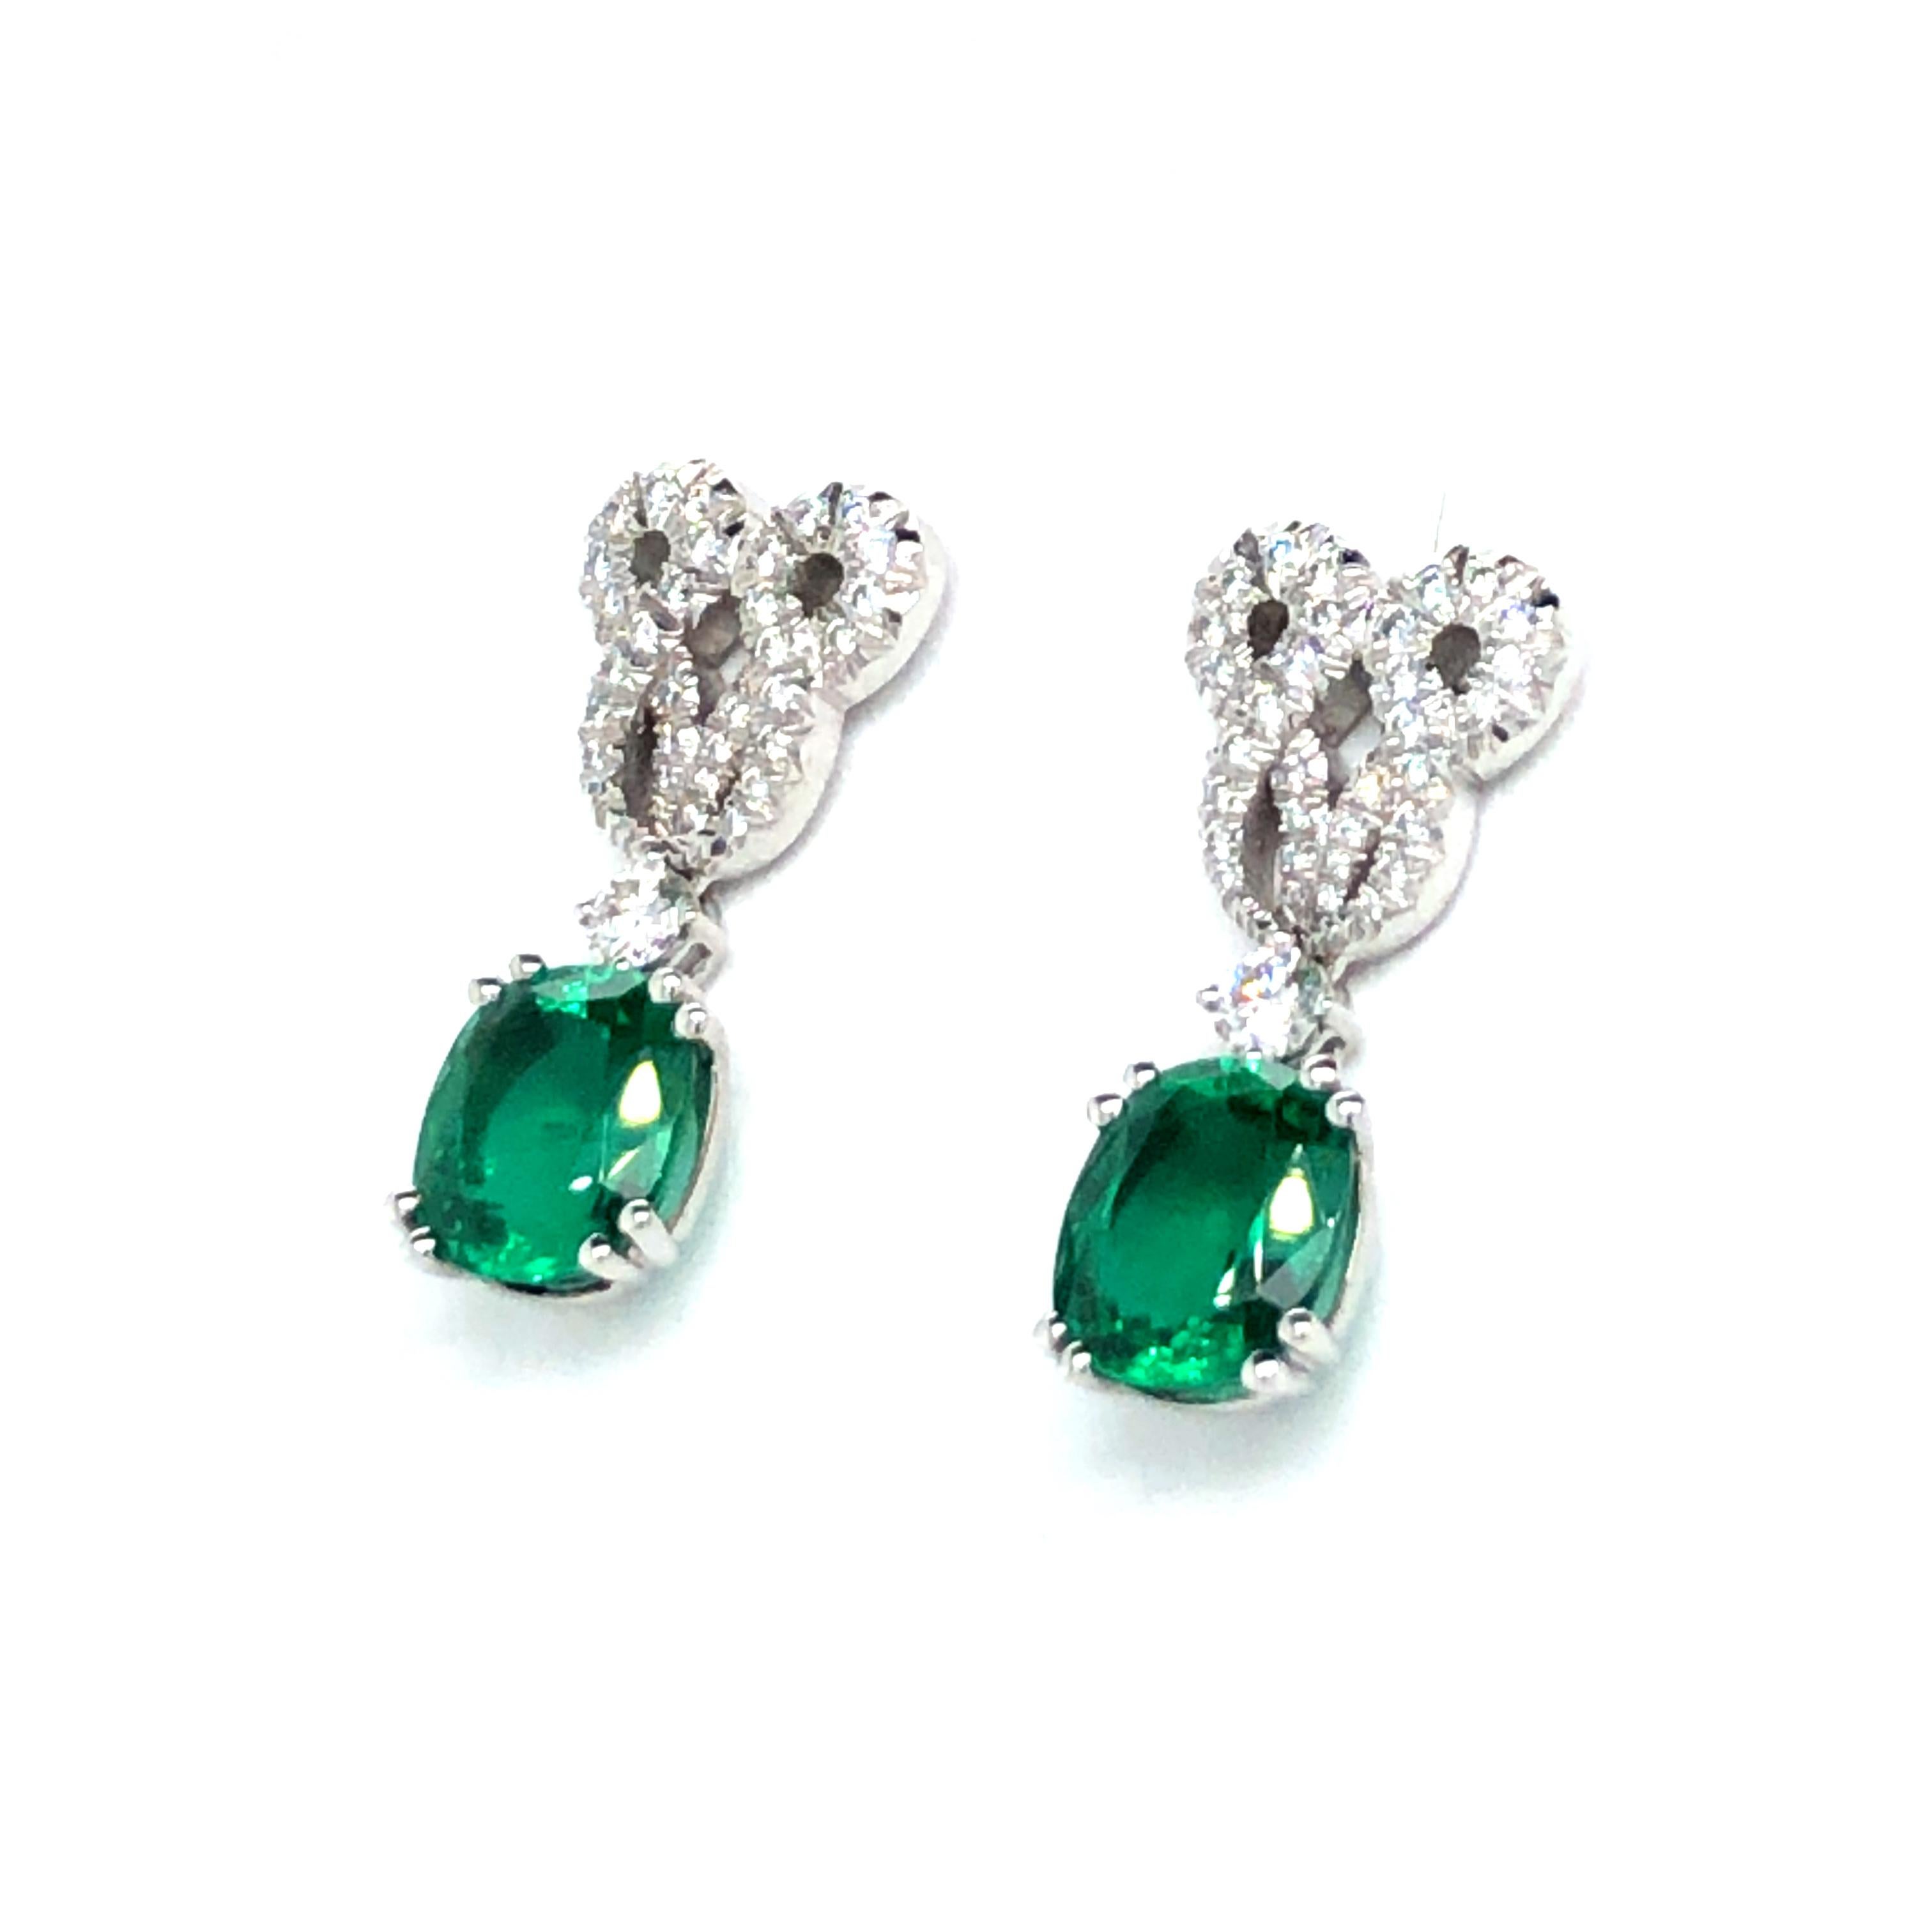 Dieses atemberaubende Paar Ohrstecker des renommierten Schweizer Juweliers Péclard besteht aus zwei kissenförmigen Smaragden von 1,65 Karat und 1,87 Karat in Edelsteinqualität. Die Smaragde sind in feine Doppelzacken gefasst und hängen an einem